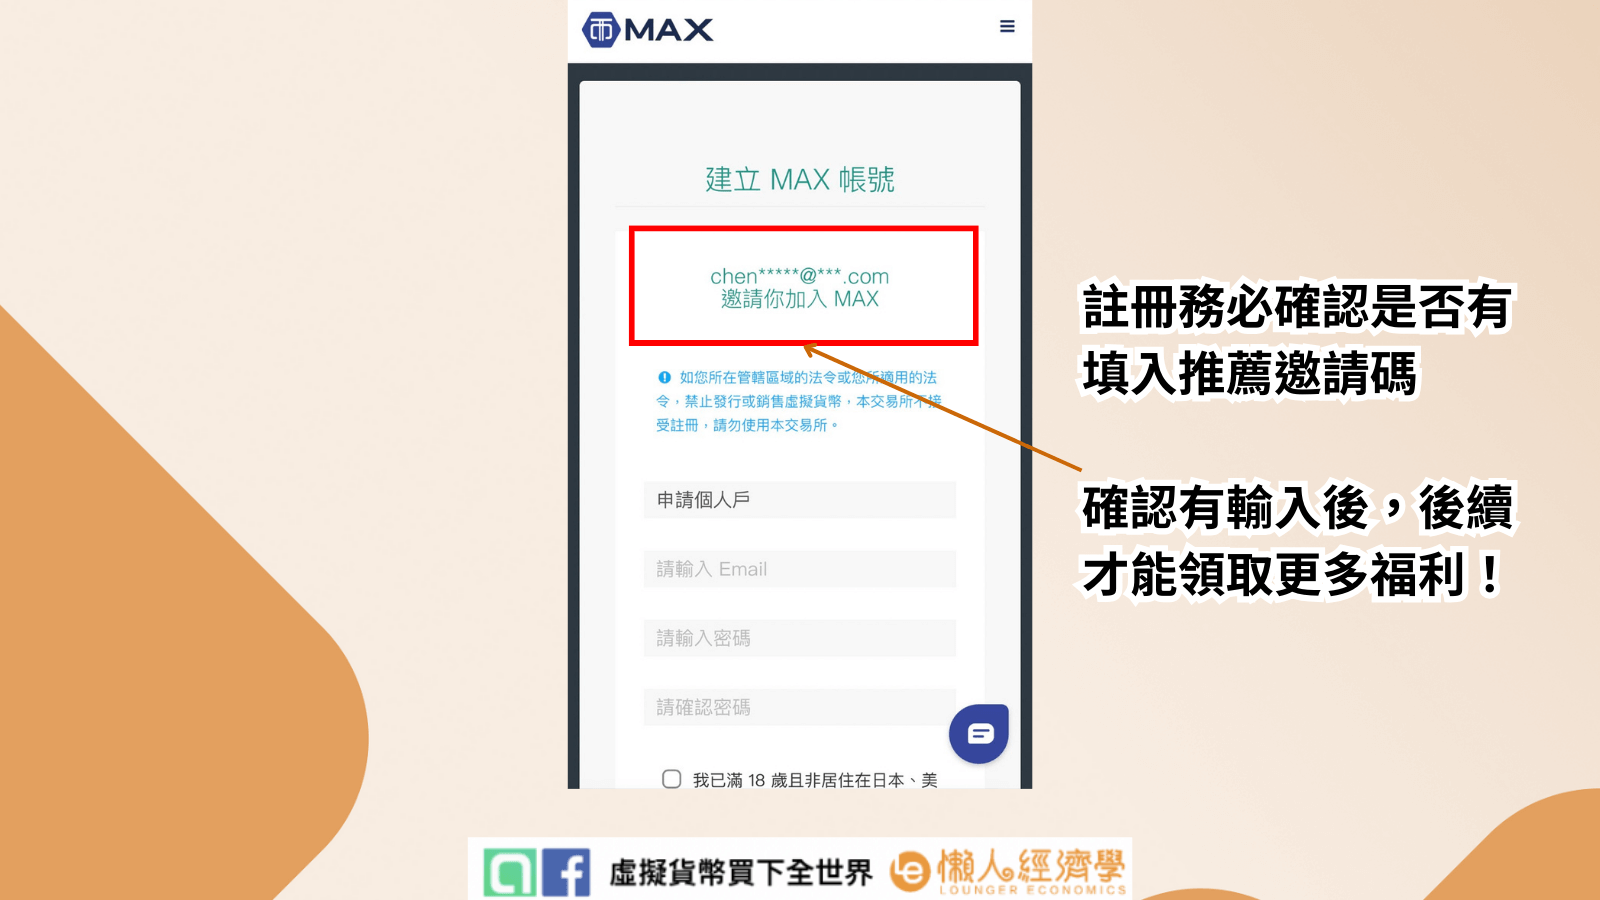 點擊註冊連結（此連結將自動帶入全網最優 MAX 推薦碼），進入連結後會到註冊畫面，看到註冊畫面後在首頁上方看到 「 chen*****@***.com 邀請你加入 MAX 」就可以順利執行註冊程序。